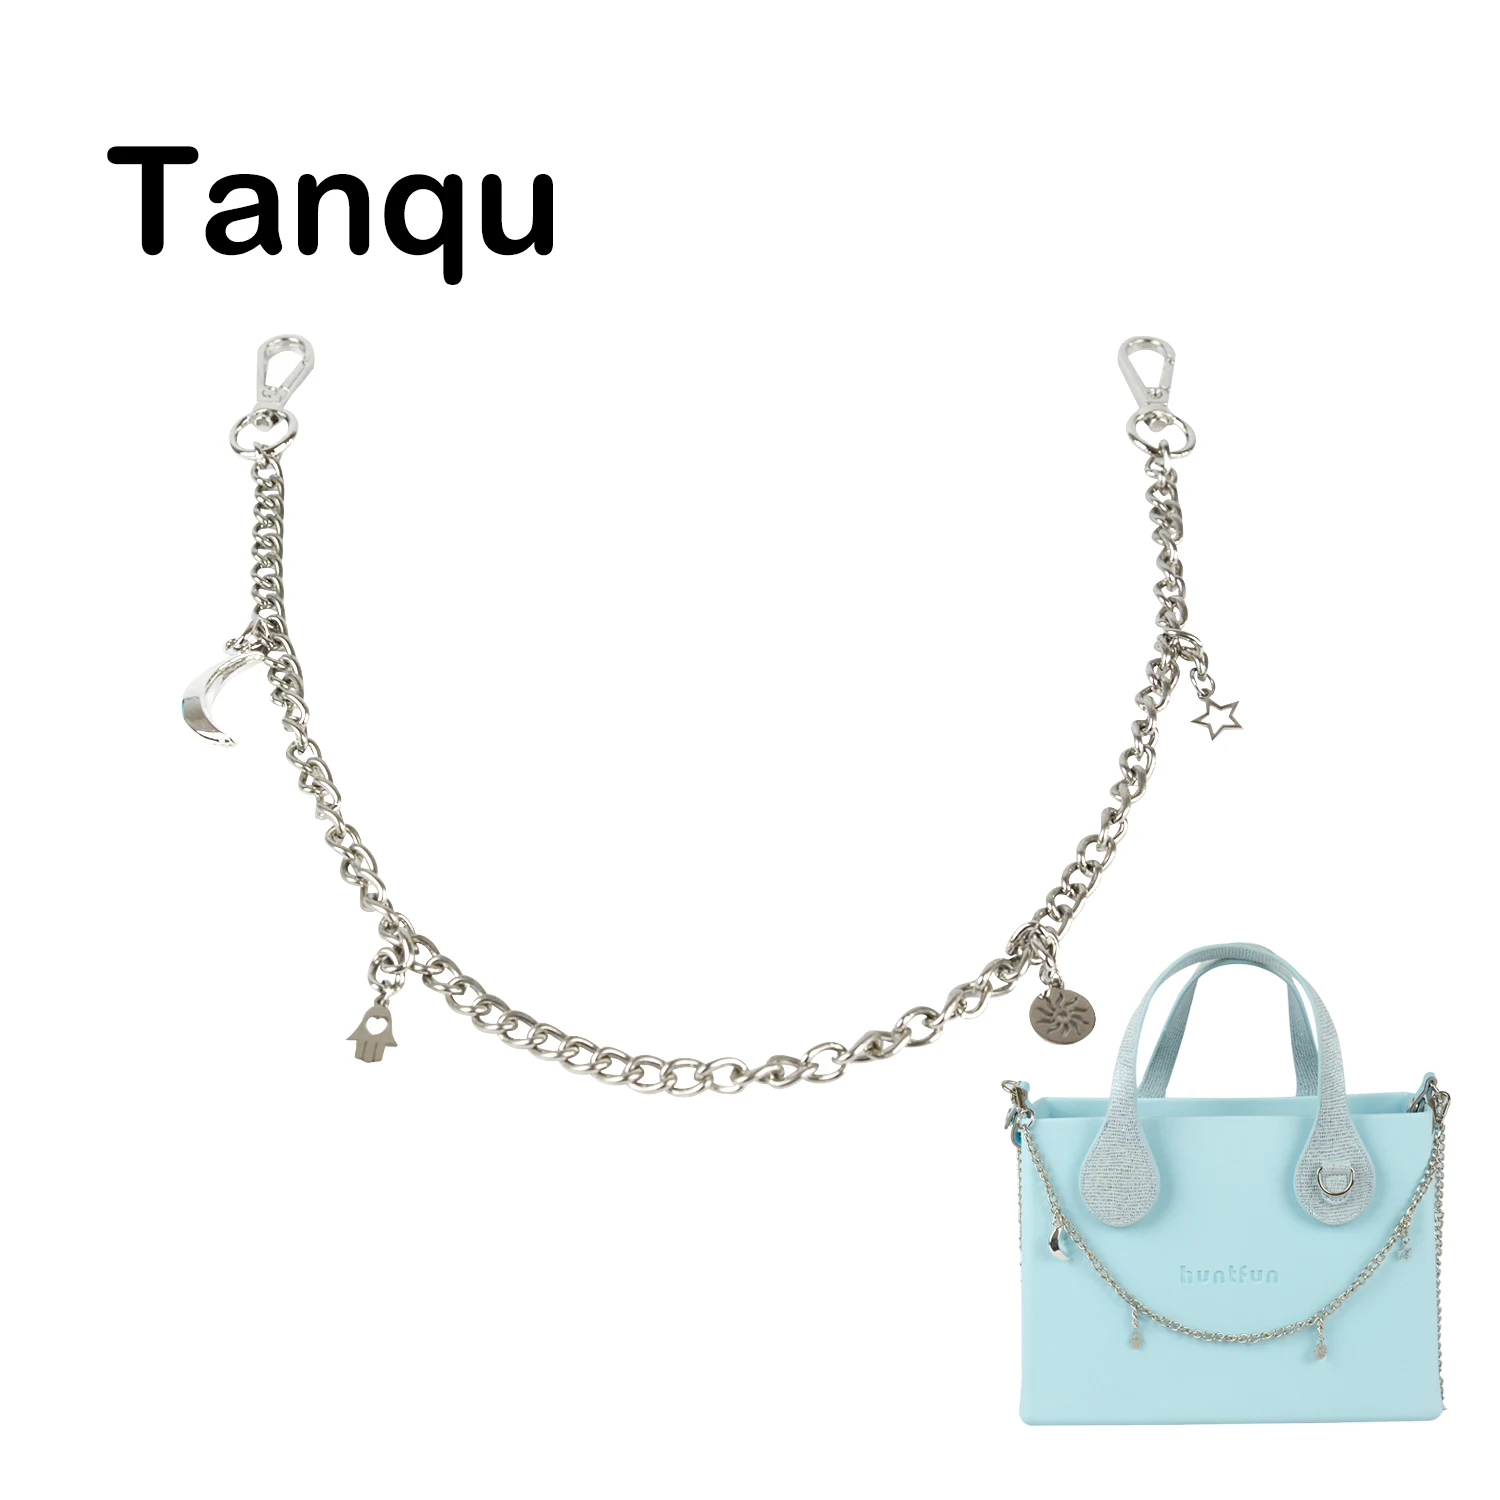 Фото Металлическая цепочка Tanqu для O Pocket Classic Mini Bag серебристые цепочки EVA Huntfun Obag